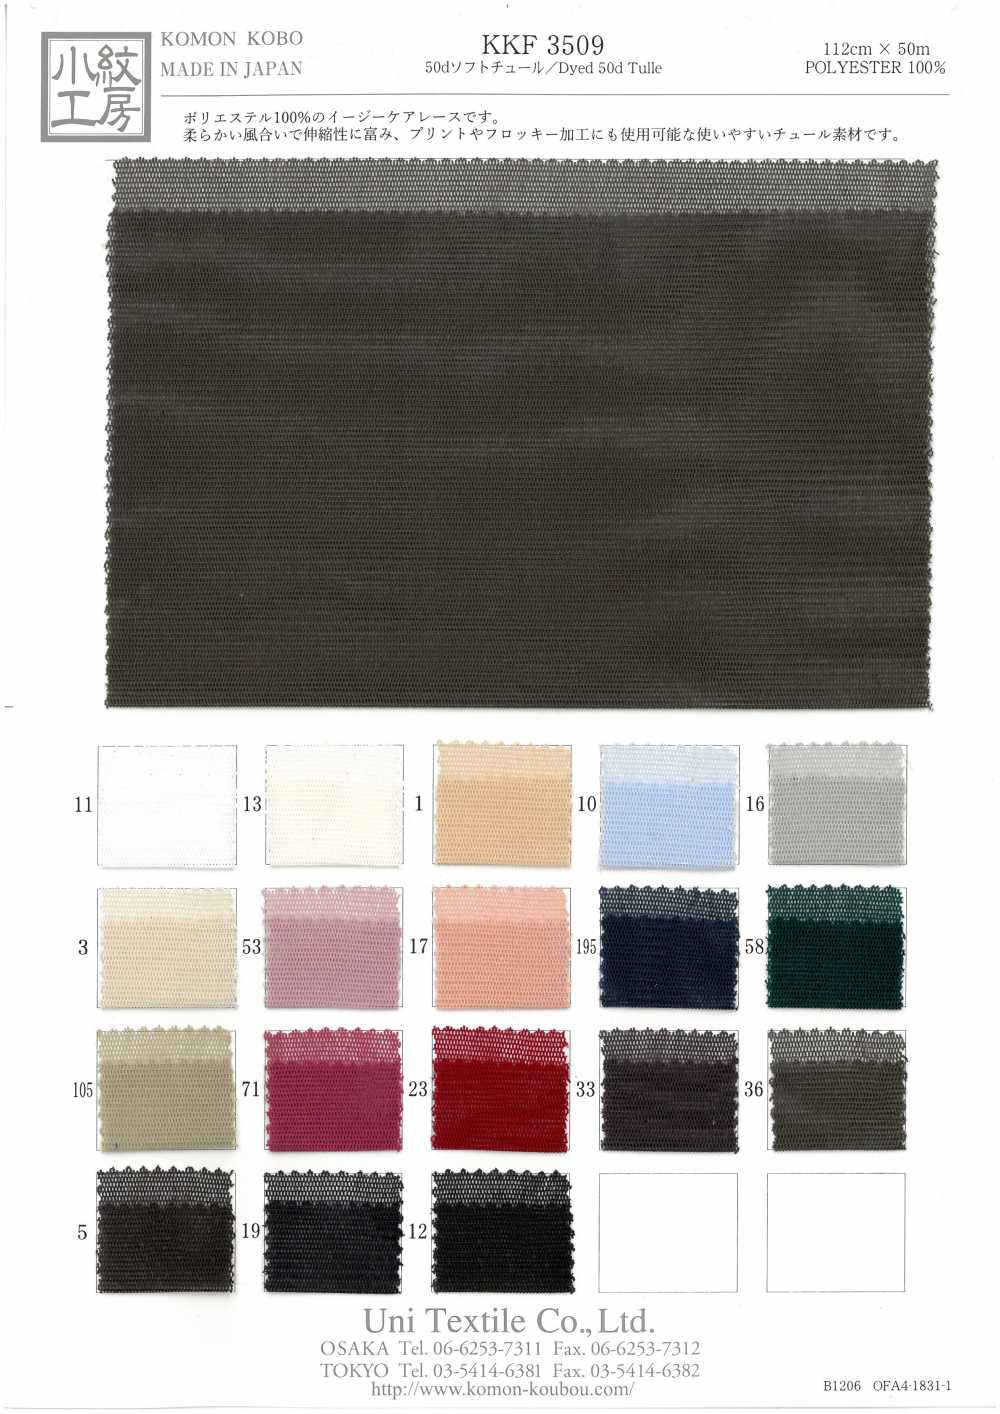 KKF3509 50d Morbido Tulle[Tessile / Tessuto] Uni Textile